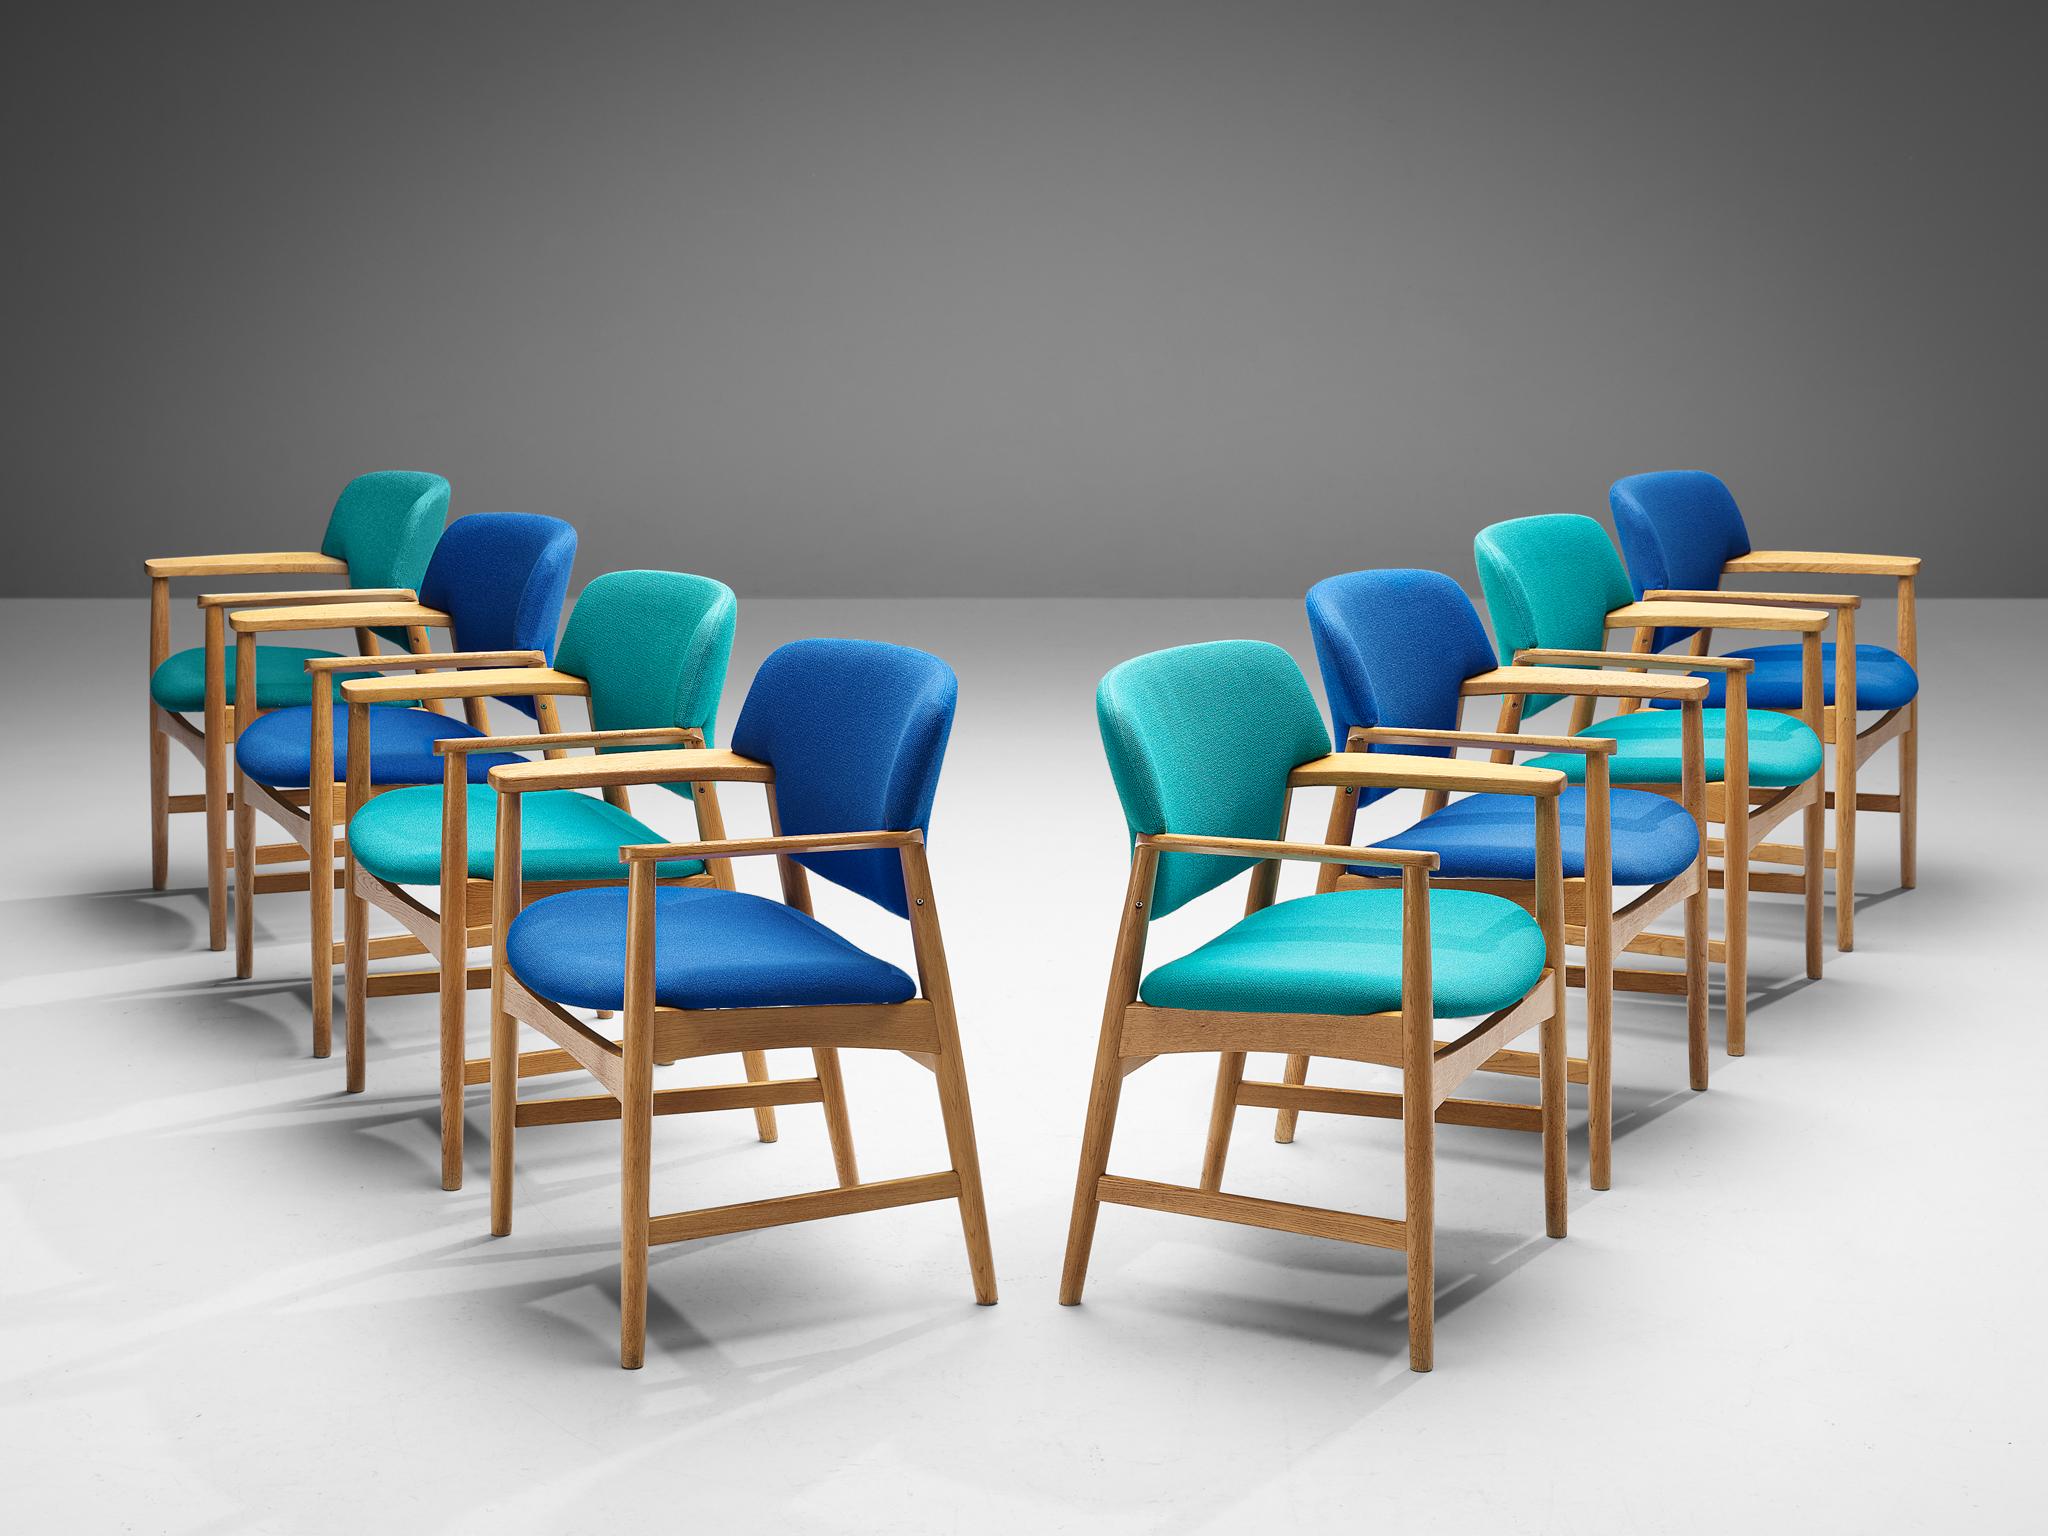 Einar Larsen & Aksel Bender-Madsen pour Fritz Hansen, ensemble de huit fauteuils, modèle 4205, revêtement bleu et turquoise, chêne, Danemark, années 1950

Ces chaises de salle à manger sculptées sont exécutées avec un dossier arrondi. Les chaises